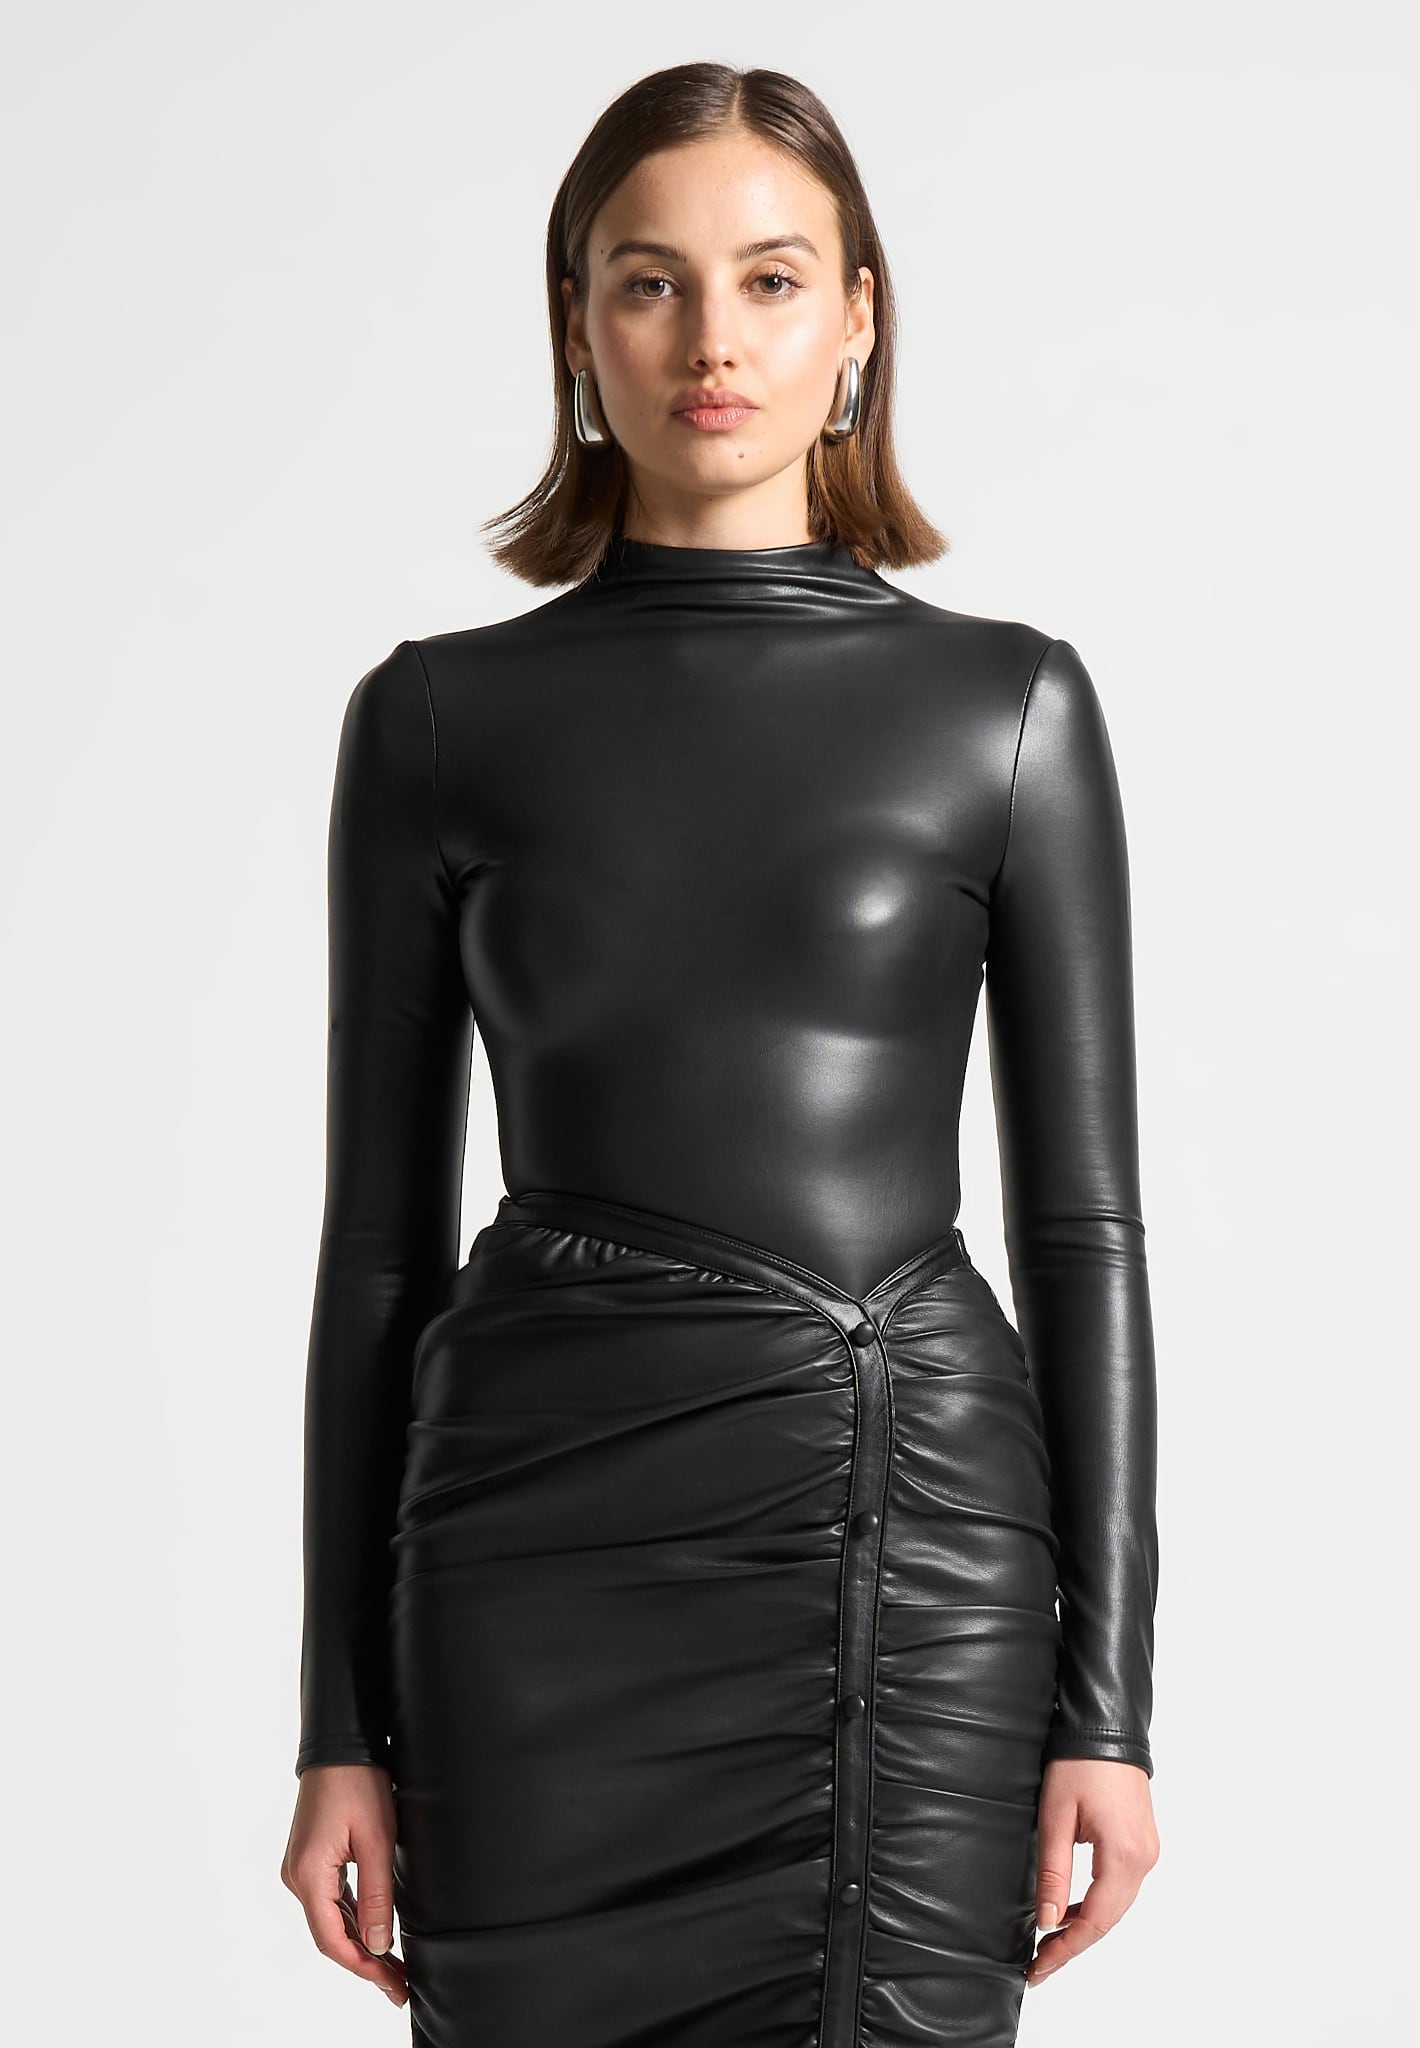 Edikted Vegan Leather High Cut Bodysuit - Black